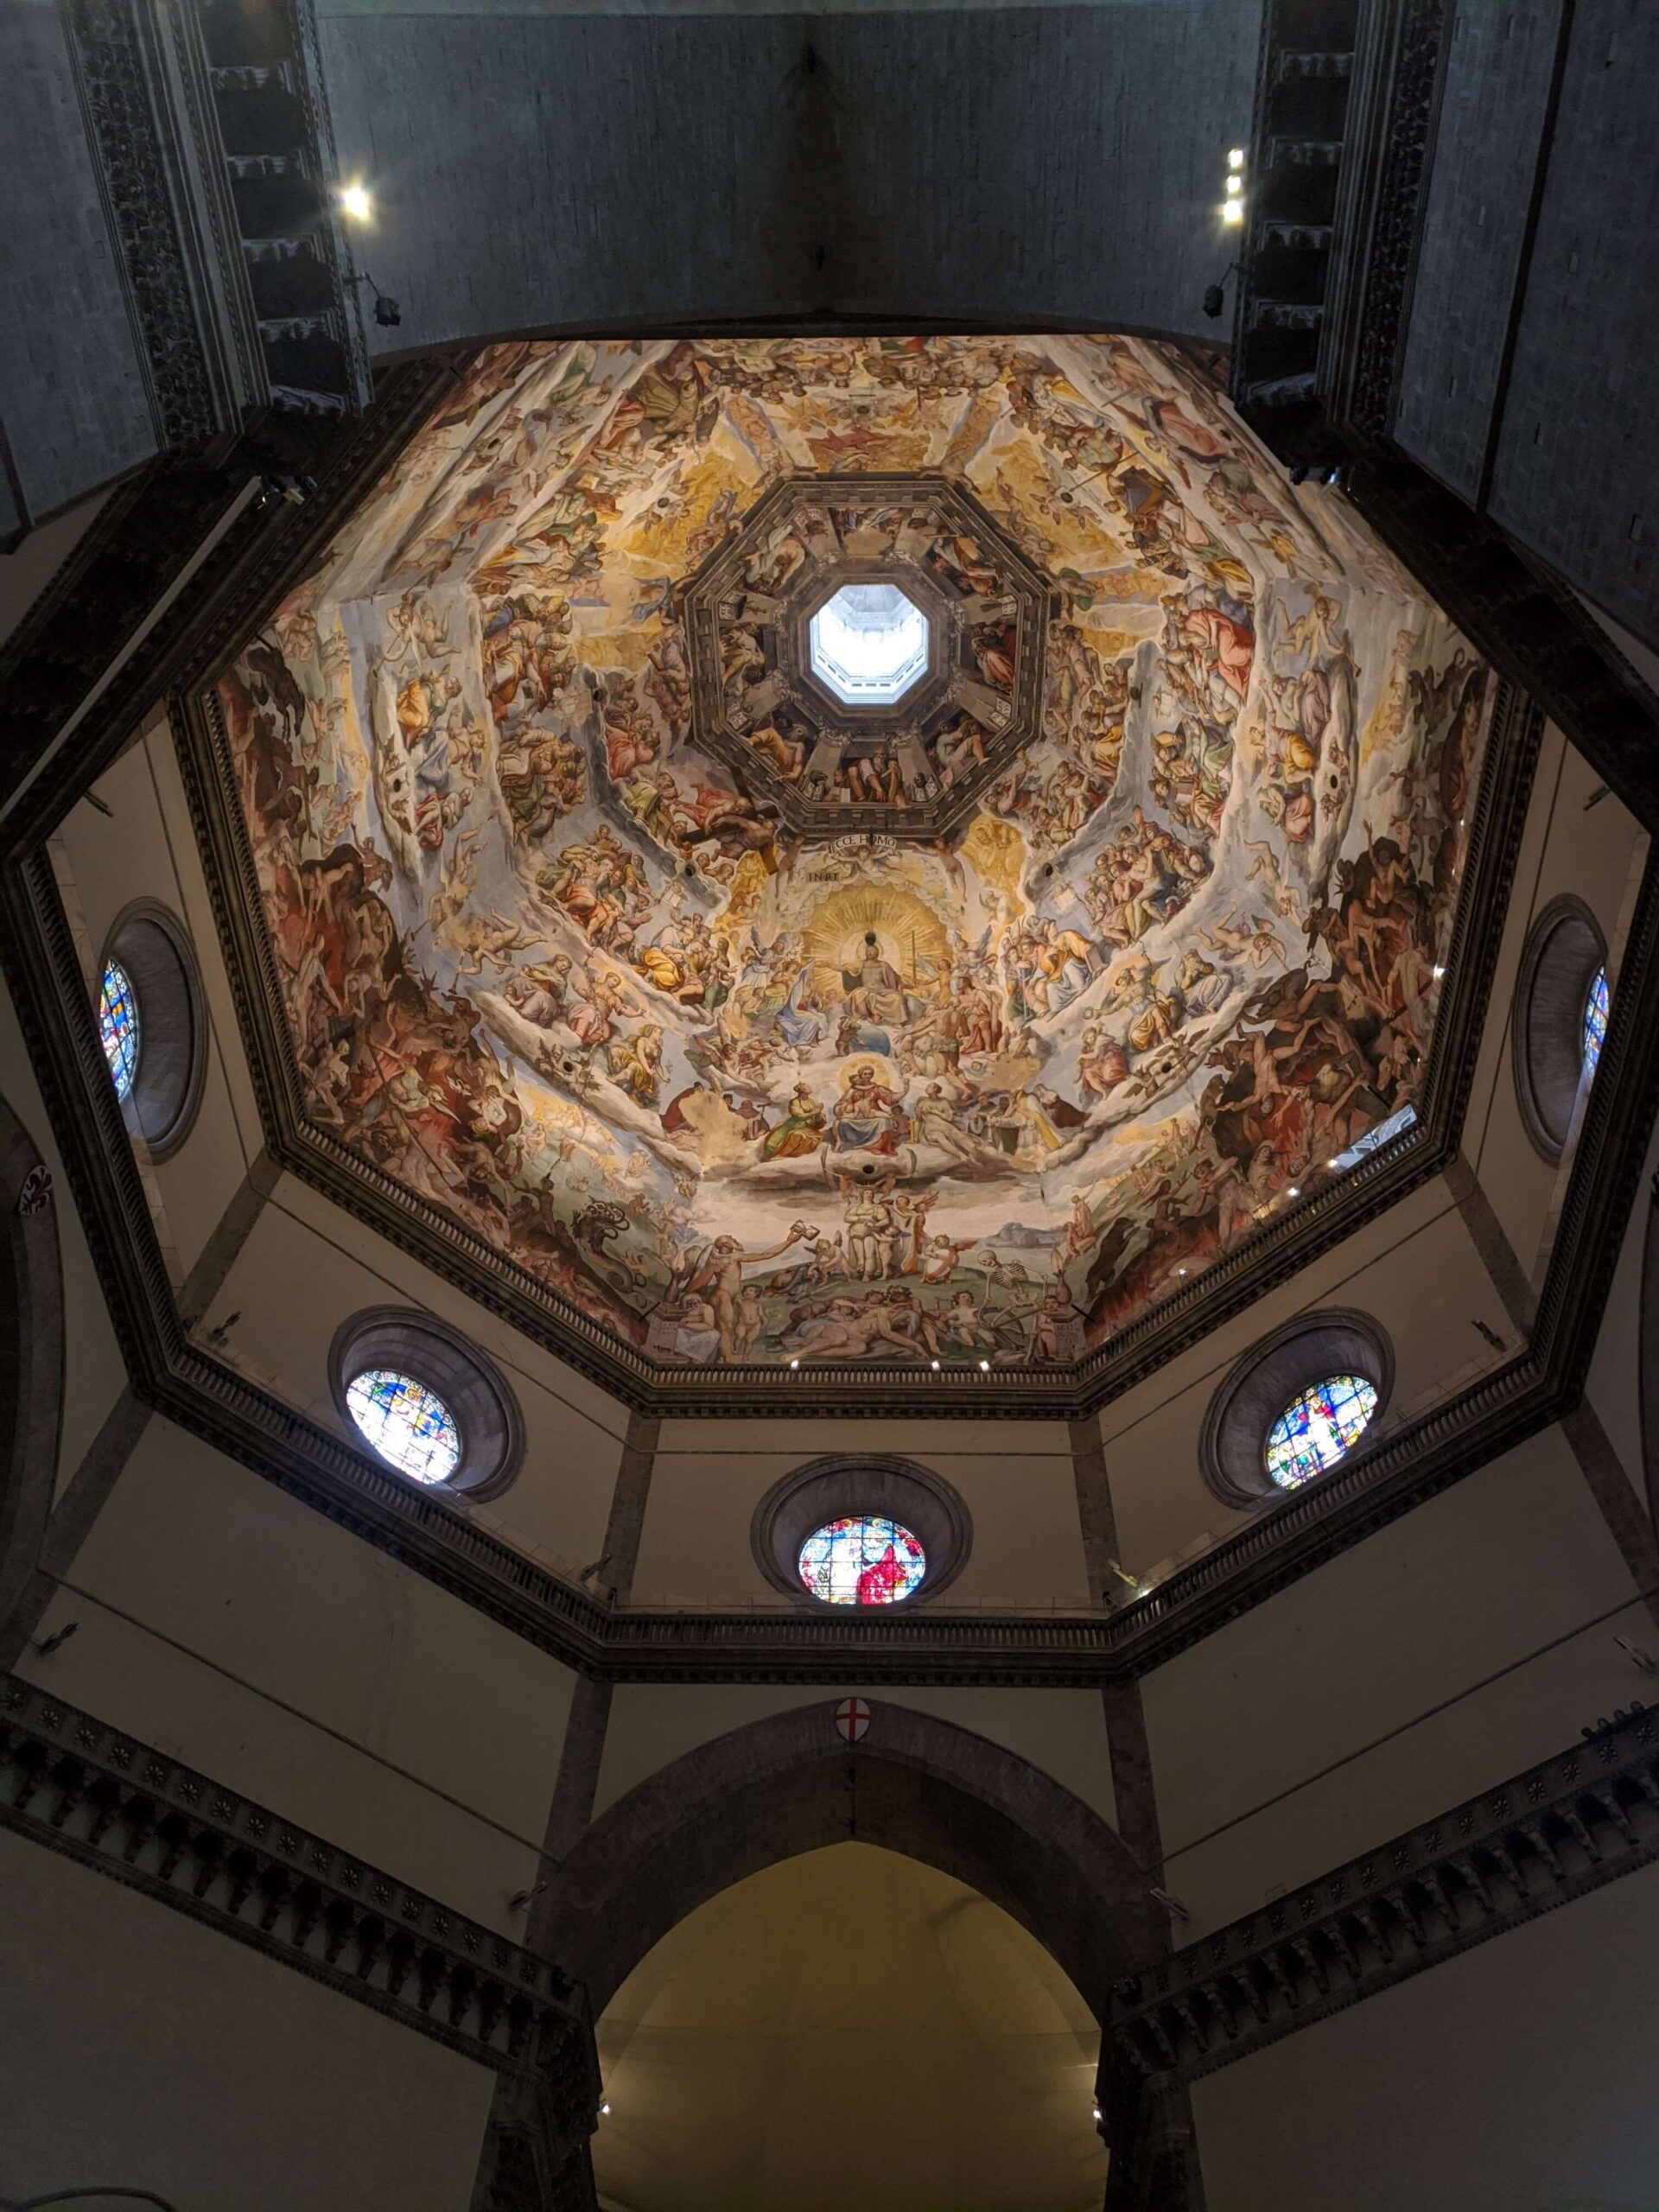 Imagem do interior da cúpula do Duomo de Florença, mostrando os afrescos vibrantes e detalhados que cobrem todo o teto, com a luz natural entrando pelo óculo central.